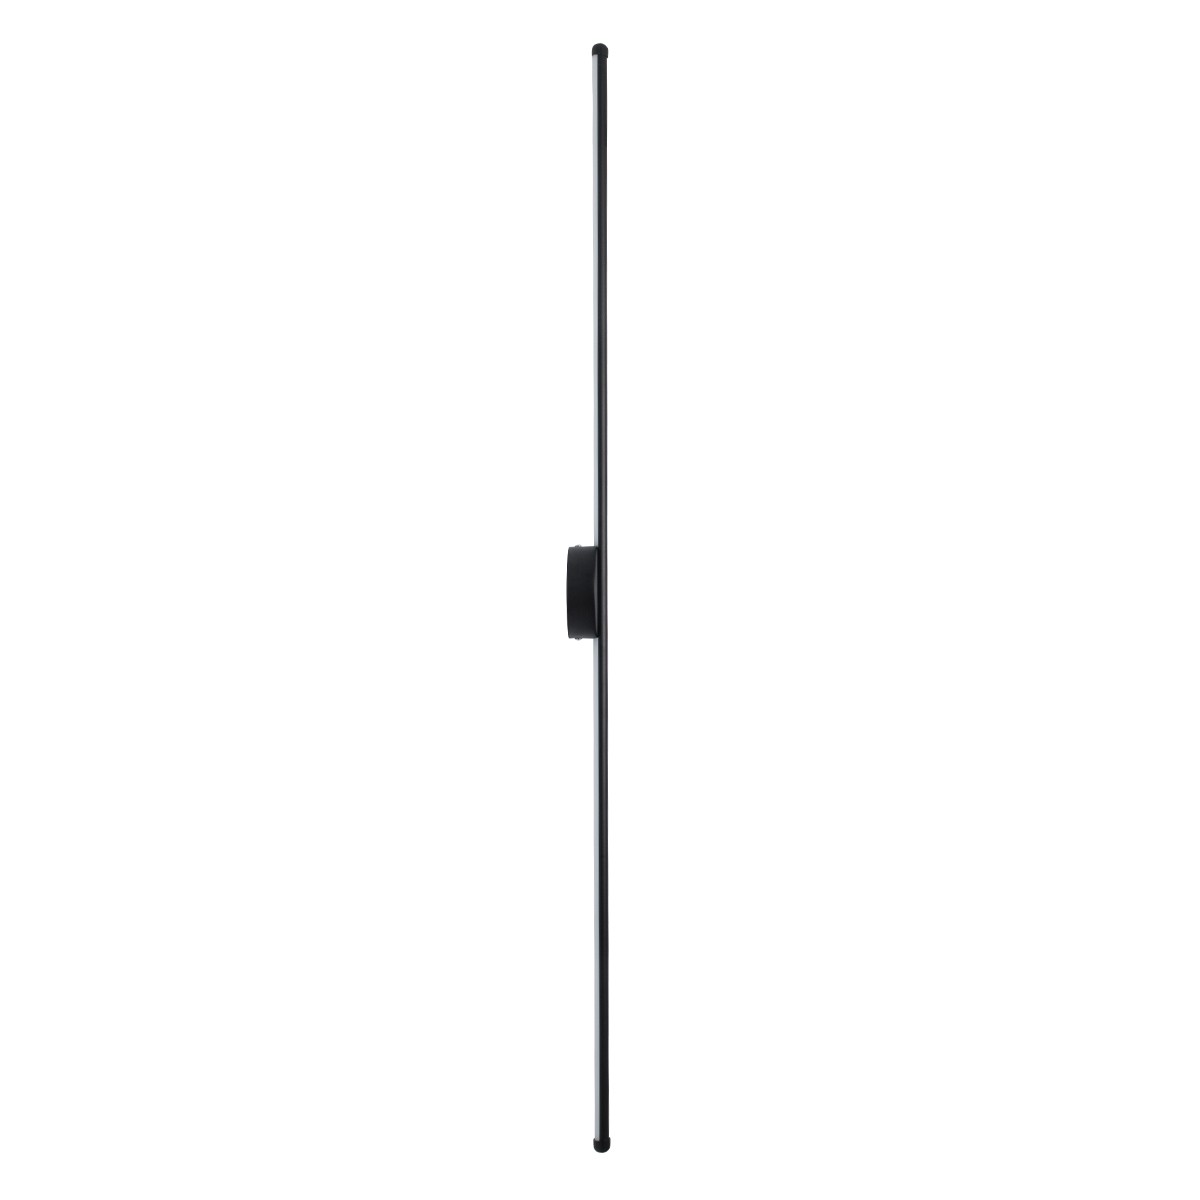 Led Γραμμικό Φωτιστικό Τοίχου - Απλίκα DIADEM 18Watt Μαύρο με Εναλλαγή Φωτισμού Μ10 x Π4 x Υ120cm 61333